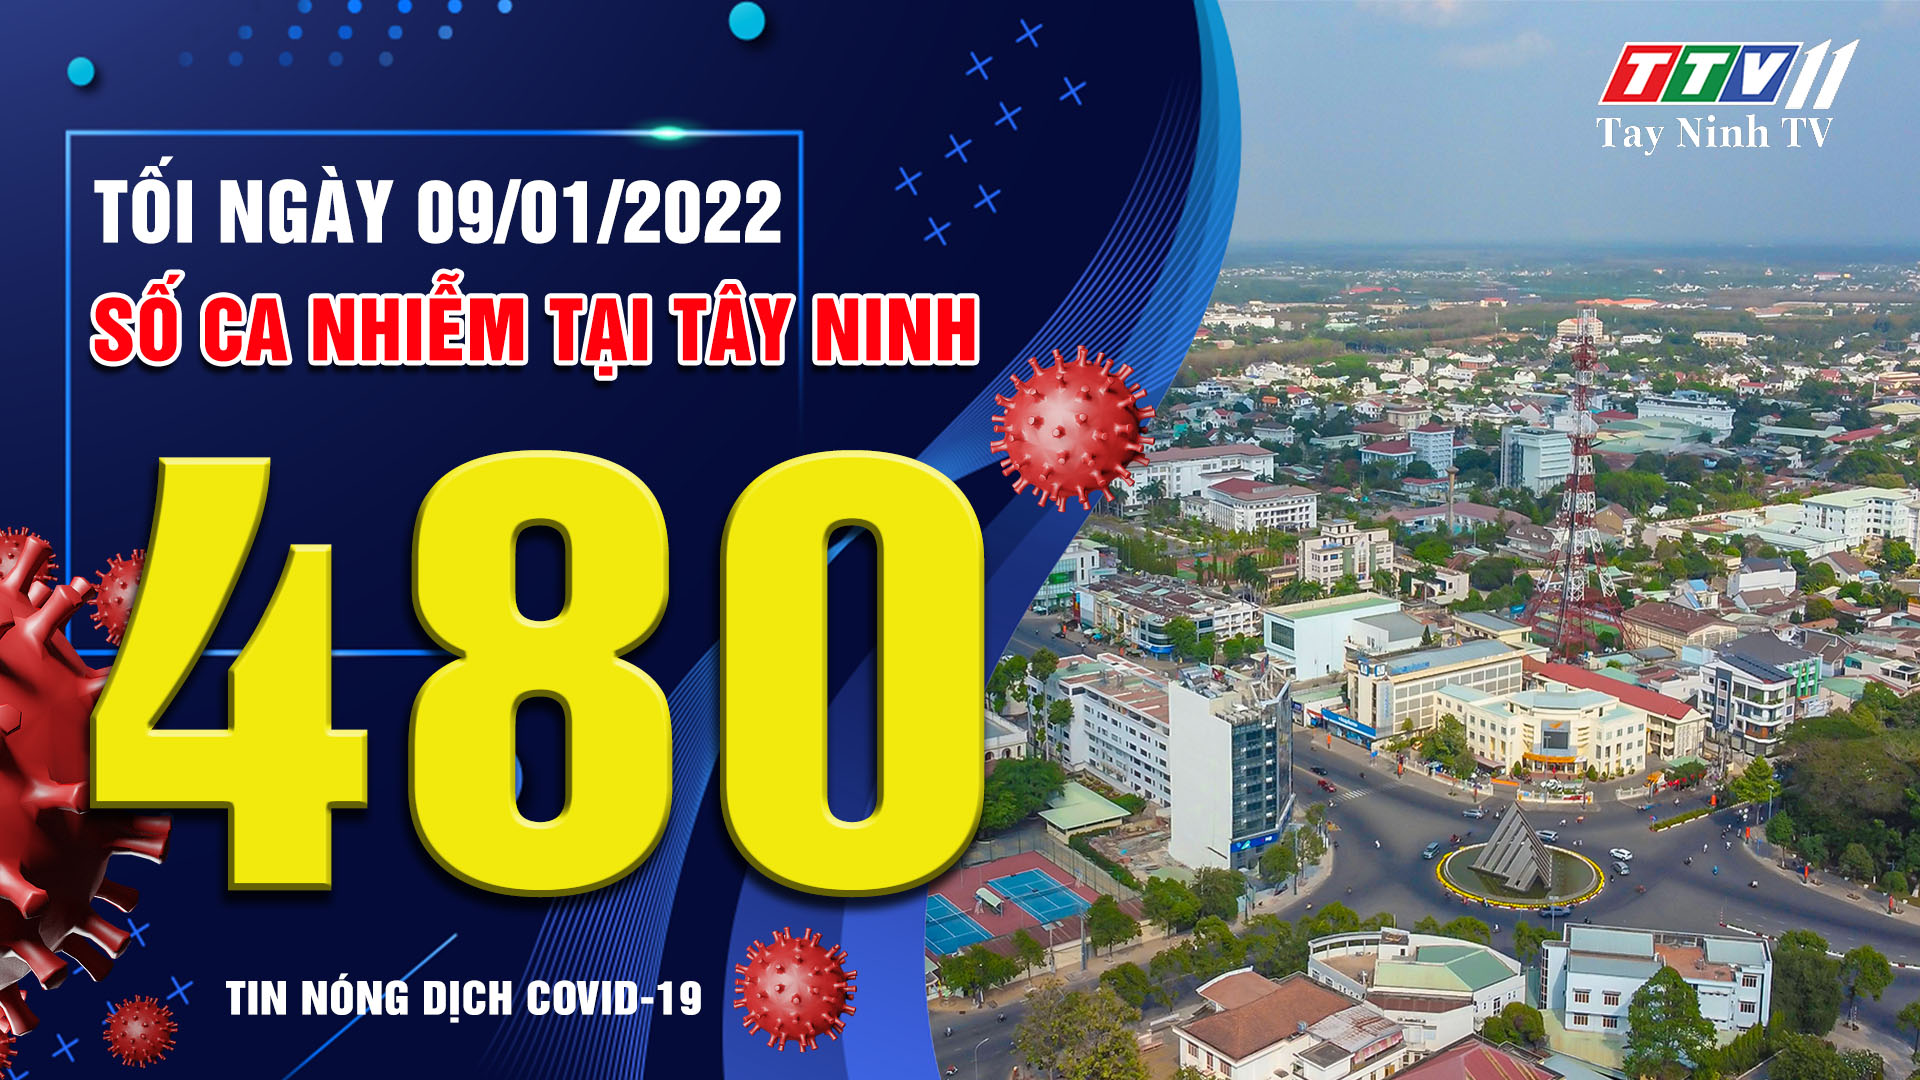 TIN TỨC COVID-19 TỐI 09/01/2022 | Tin tức hôm nay | TayNinhTV